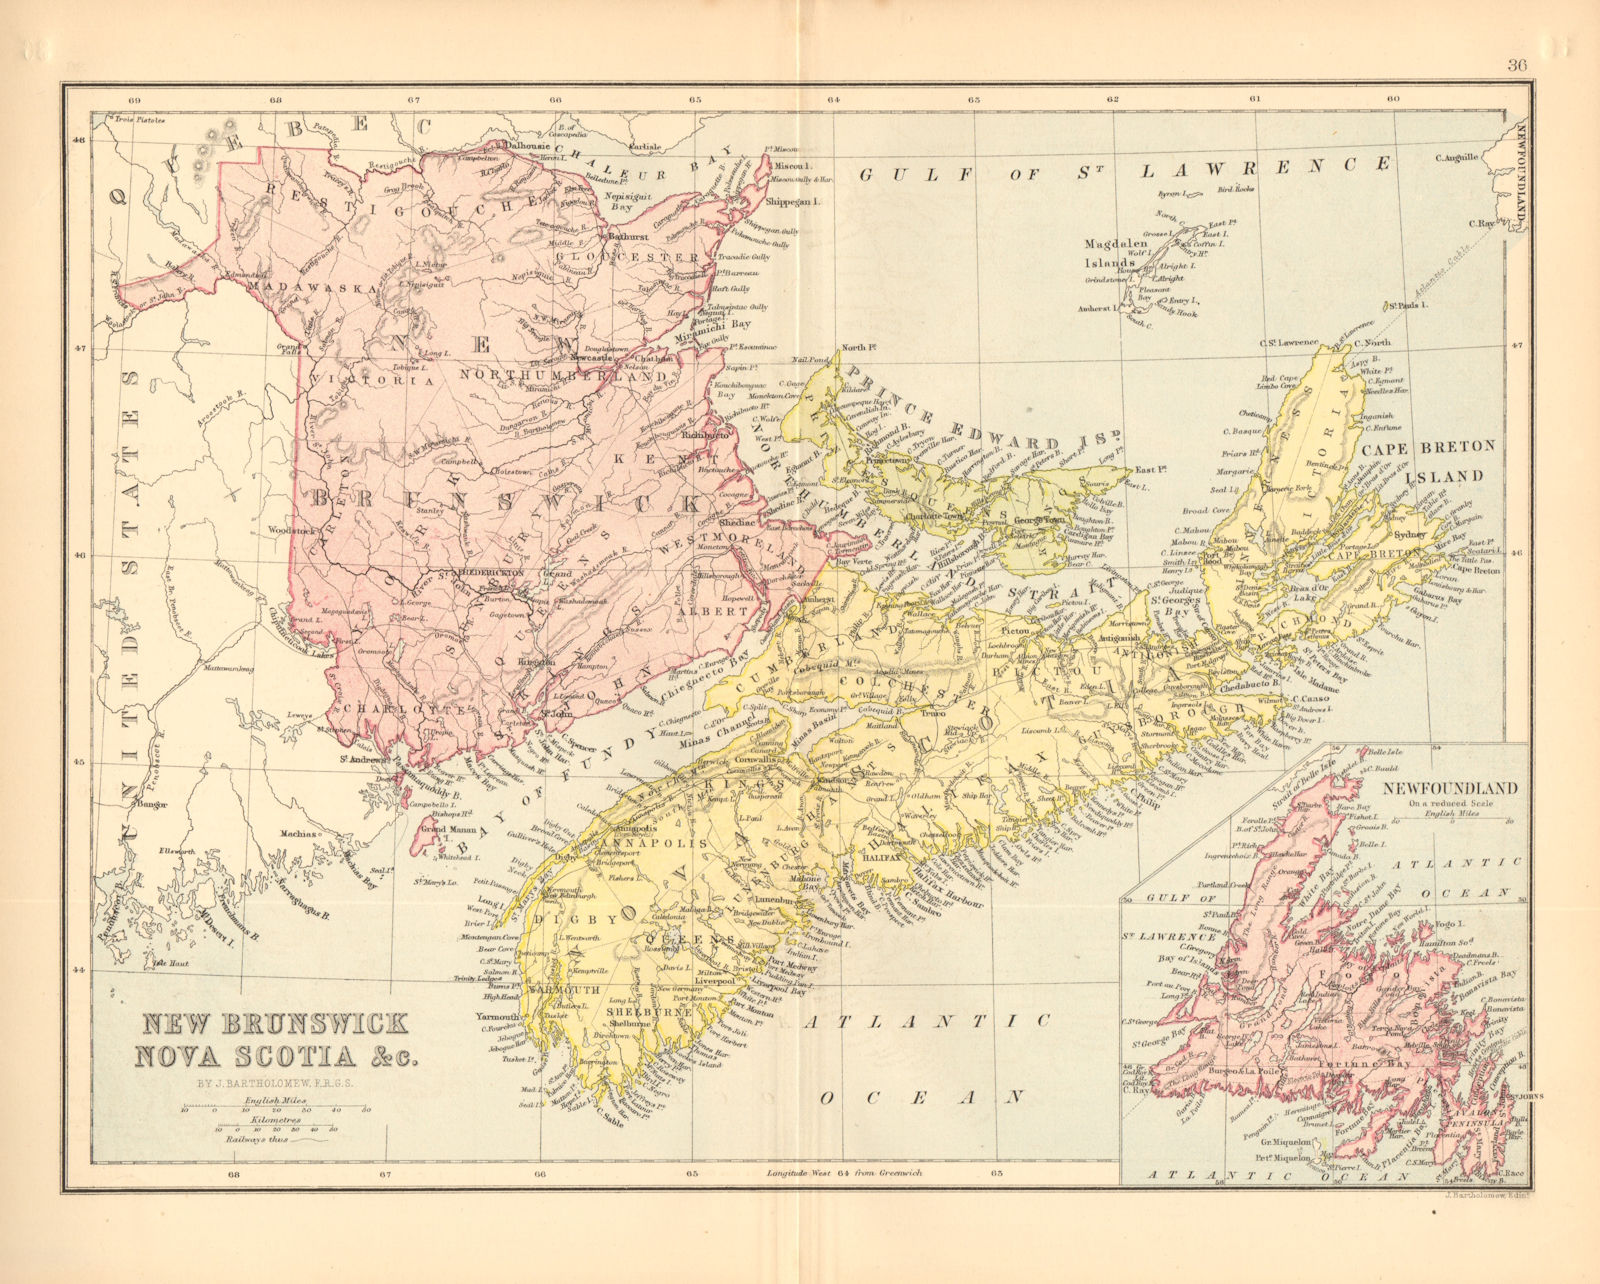 CANADA MARITIME PROVINCES. New Brunswick Nova Scotia Newfoundland PEI 1876 map